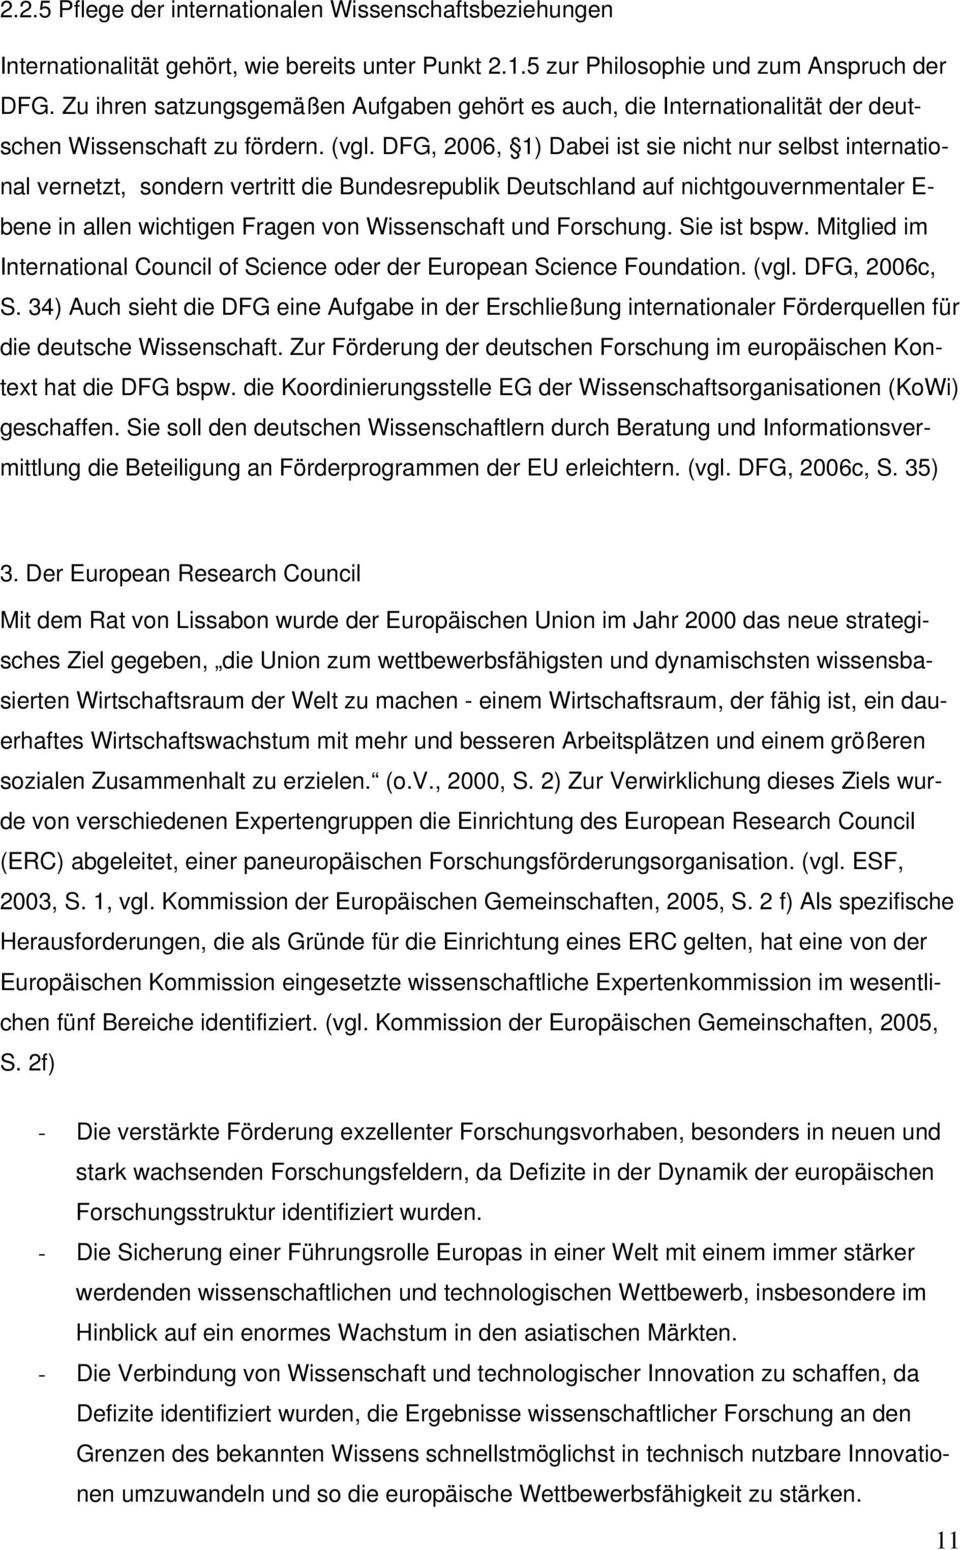 DFG, 2006, 1) Dabei ist sie nicht nur selbst international vernetzt, sondern vertritt die Bundesrepublik Deutschland auf nichtgouvernmentaler E- bene in allen wichtigen Fragen von Wissenschaft und